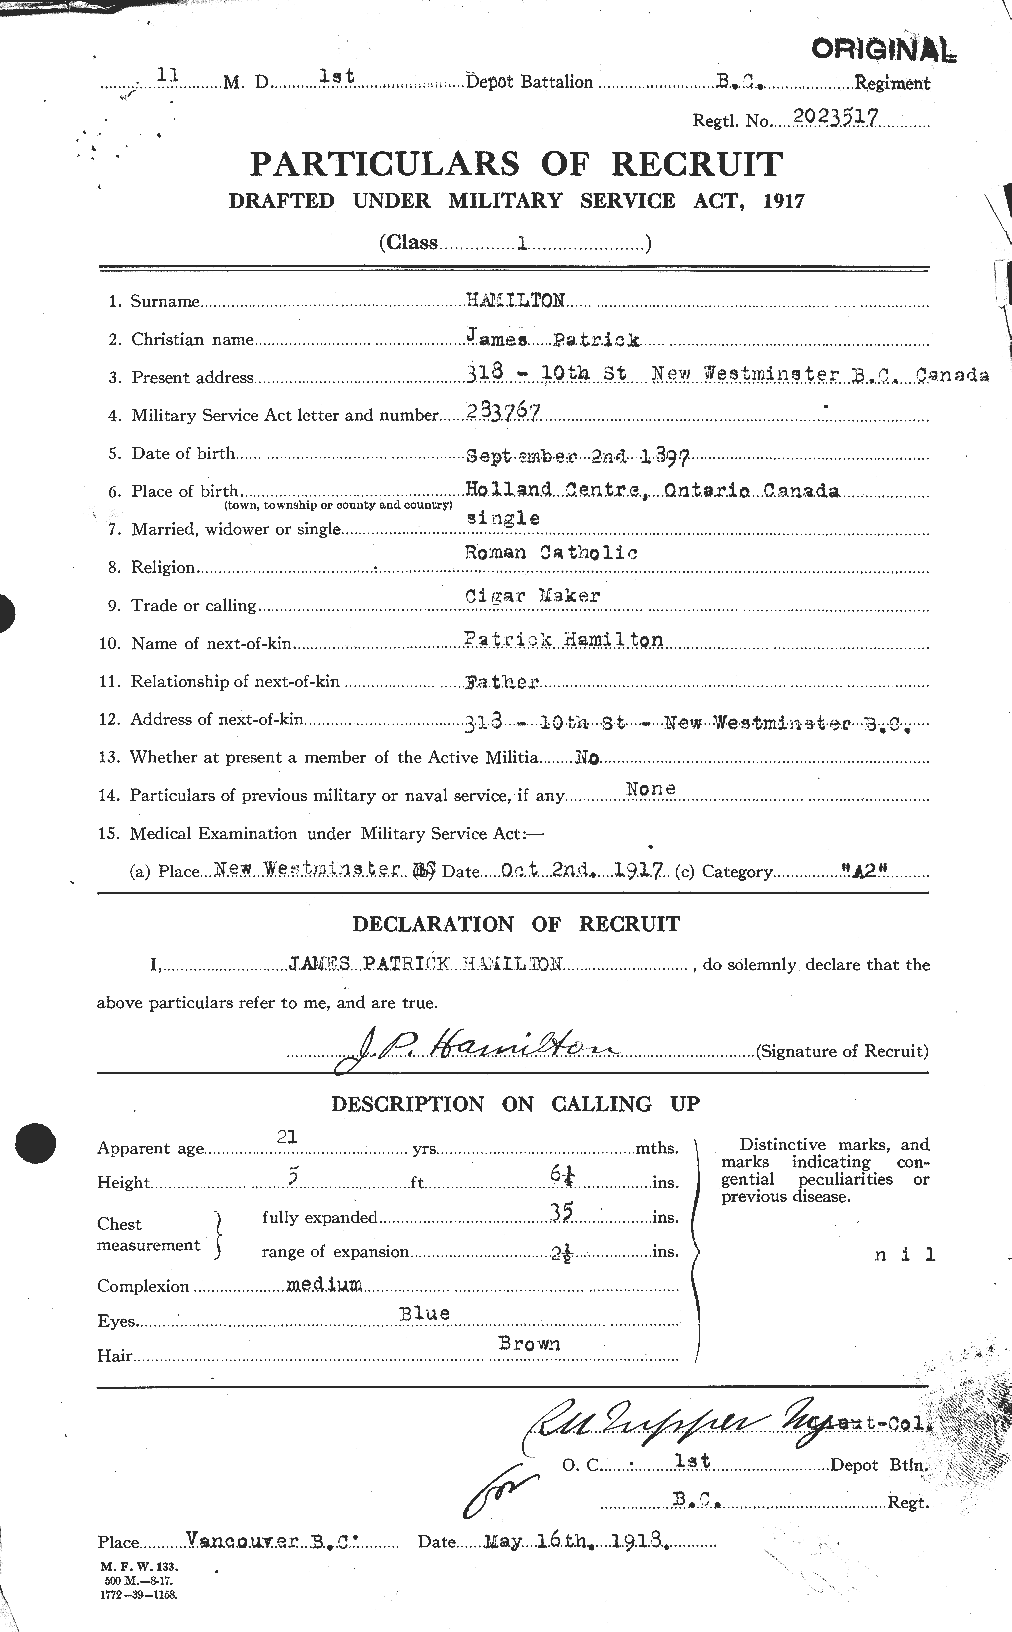 Dossiers du Personnel de la Première Guerre mondiale - CEC 372994a